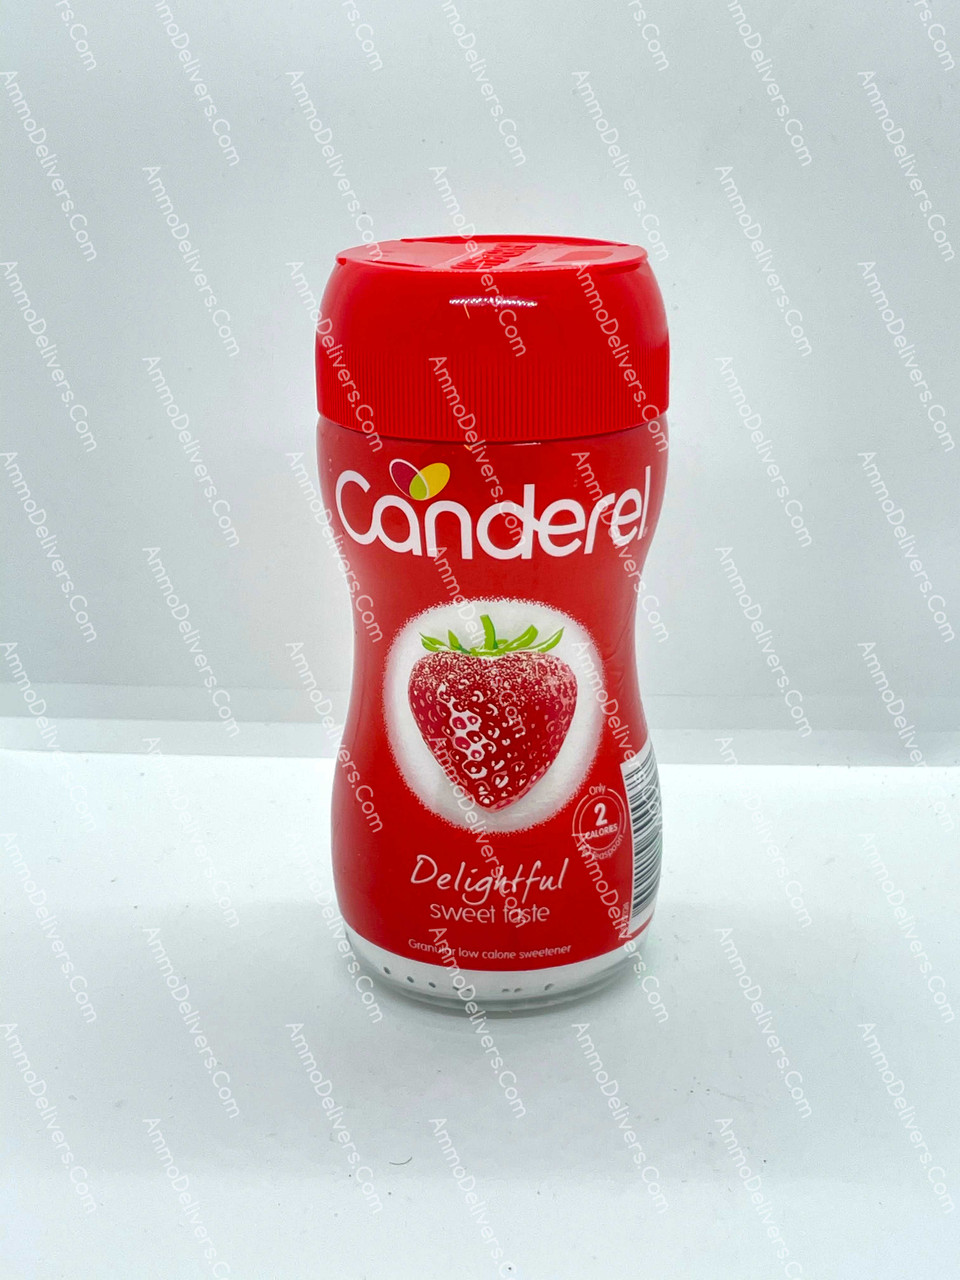 CANDEREL DELIGHTFUL SWEET TASTE 40G - كاندريل سكر بديل